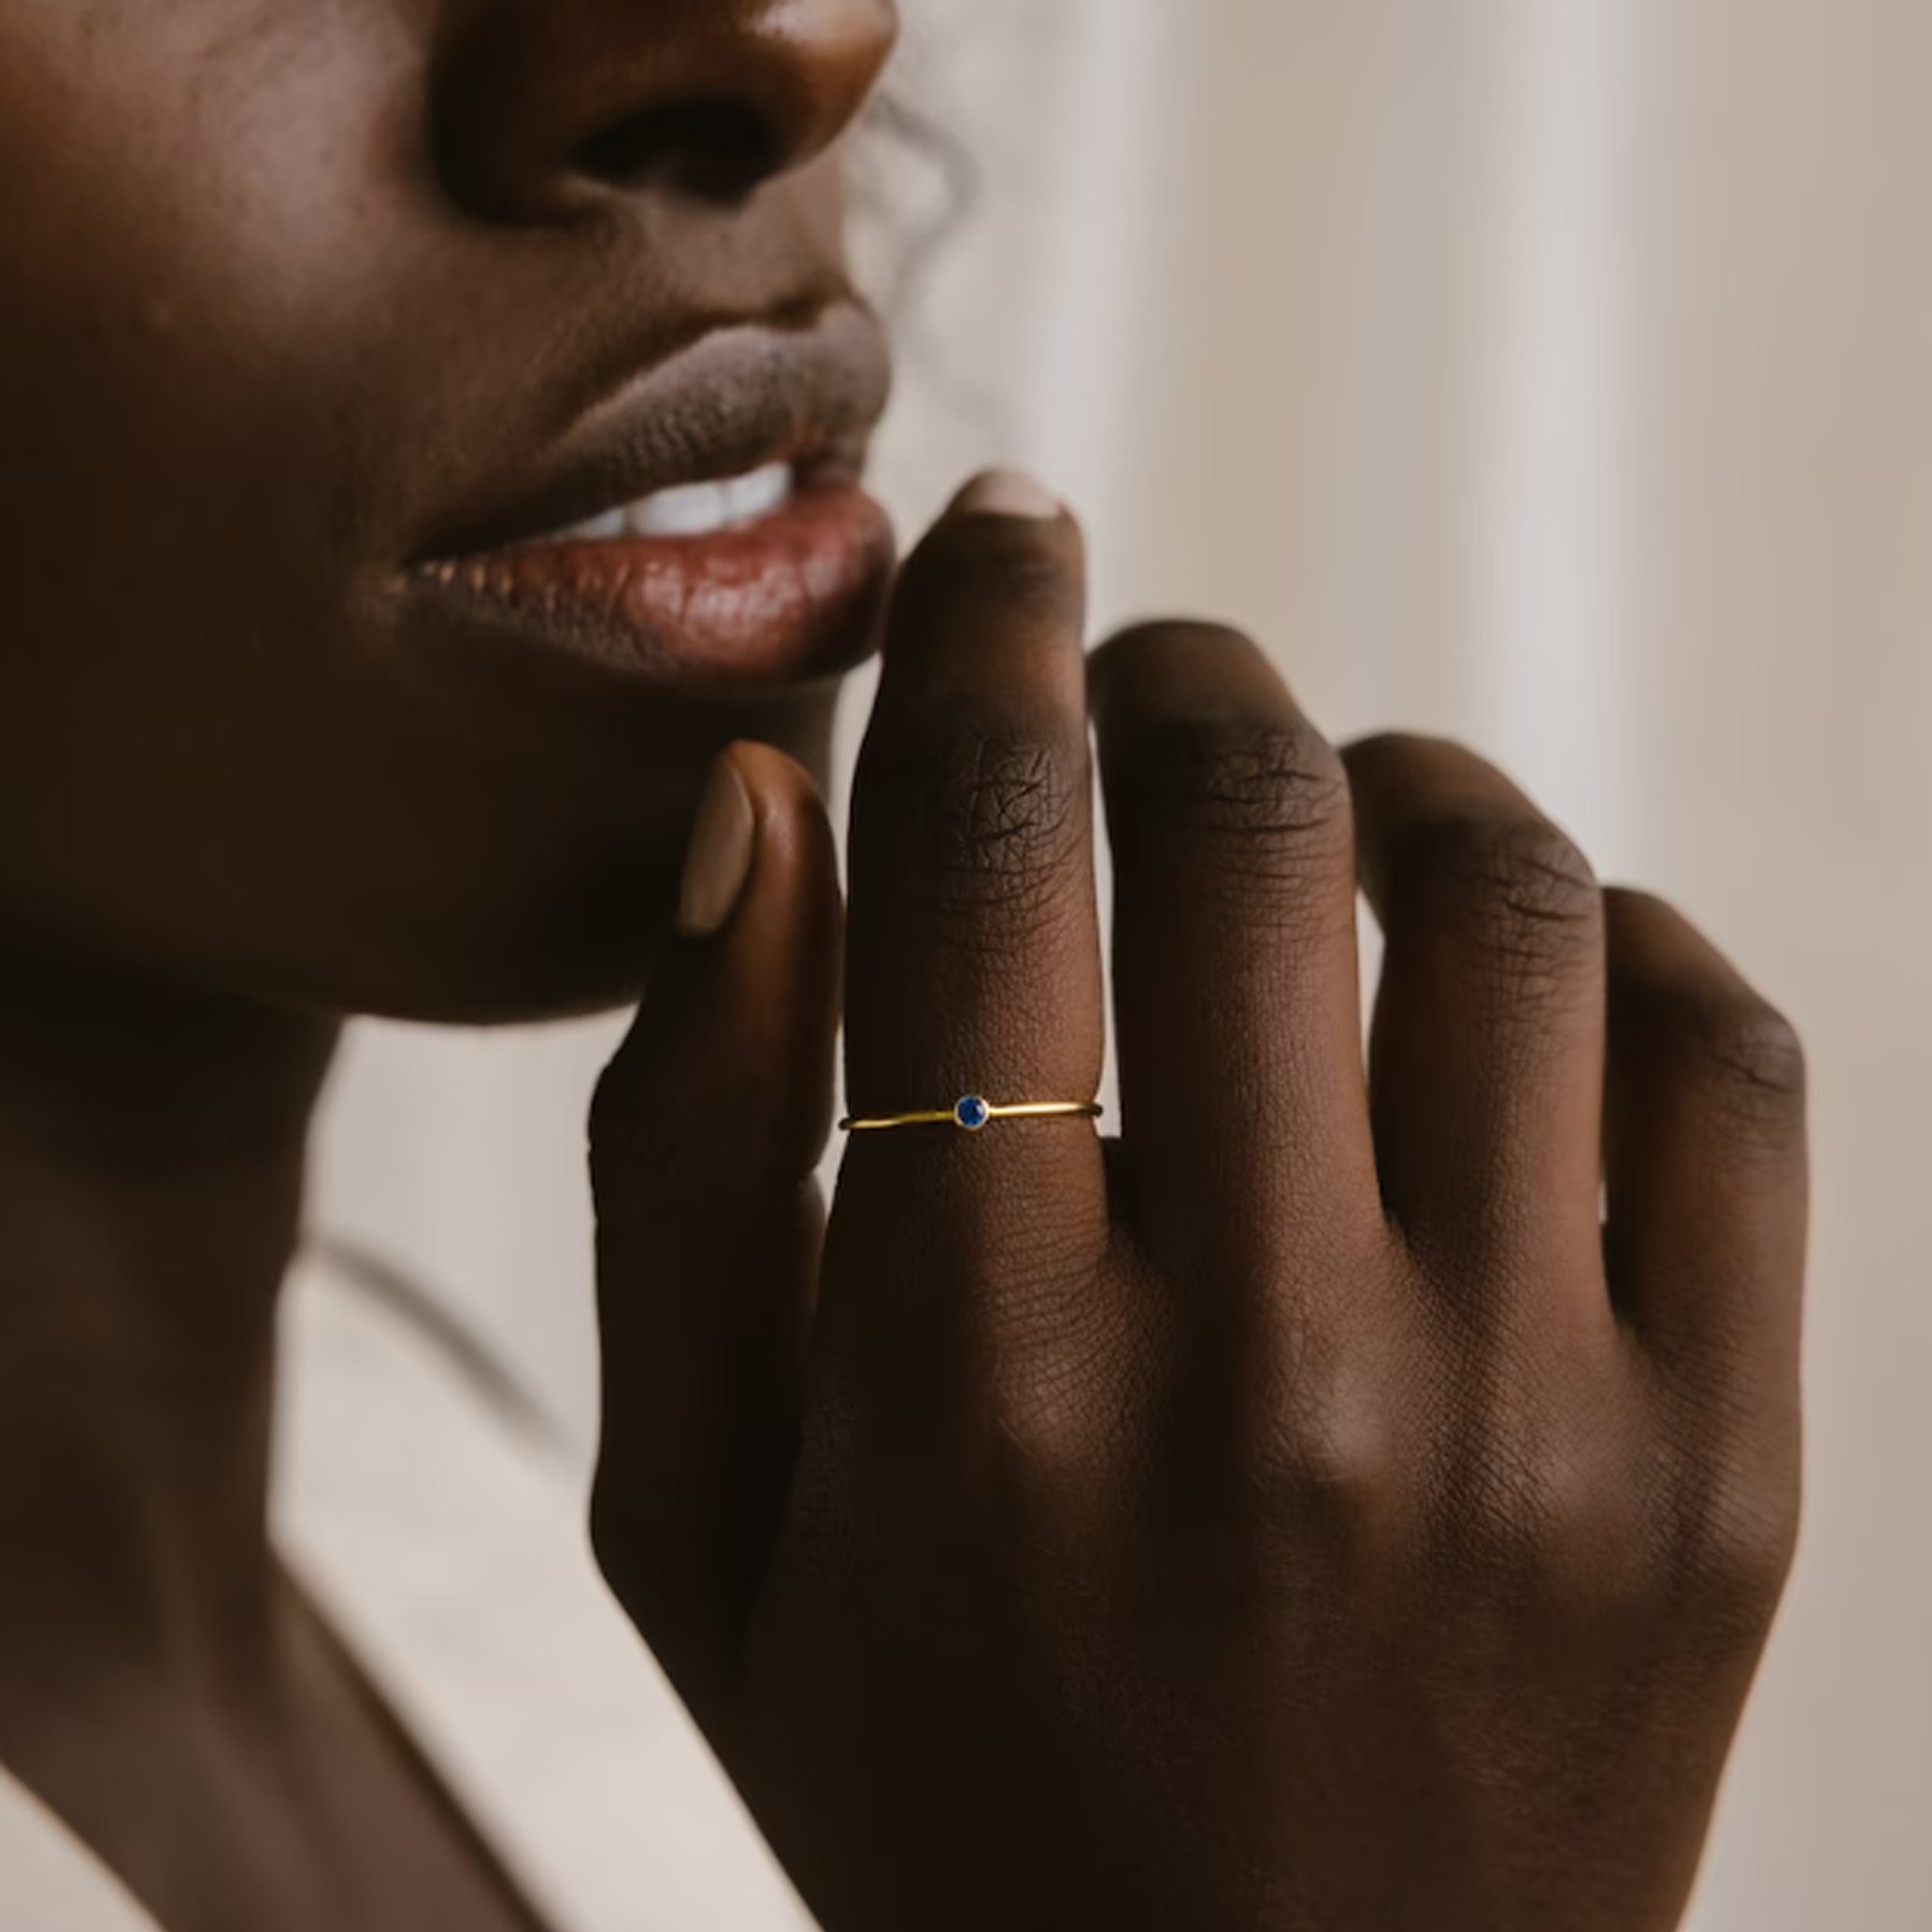 GOLDEN Fingerring Stein | Stapelring mit Geburtsstein Silber zierlicher Minimalistischer Mai Ring